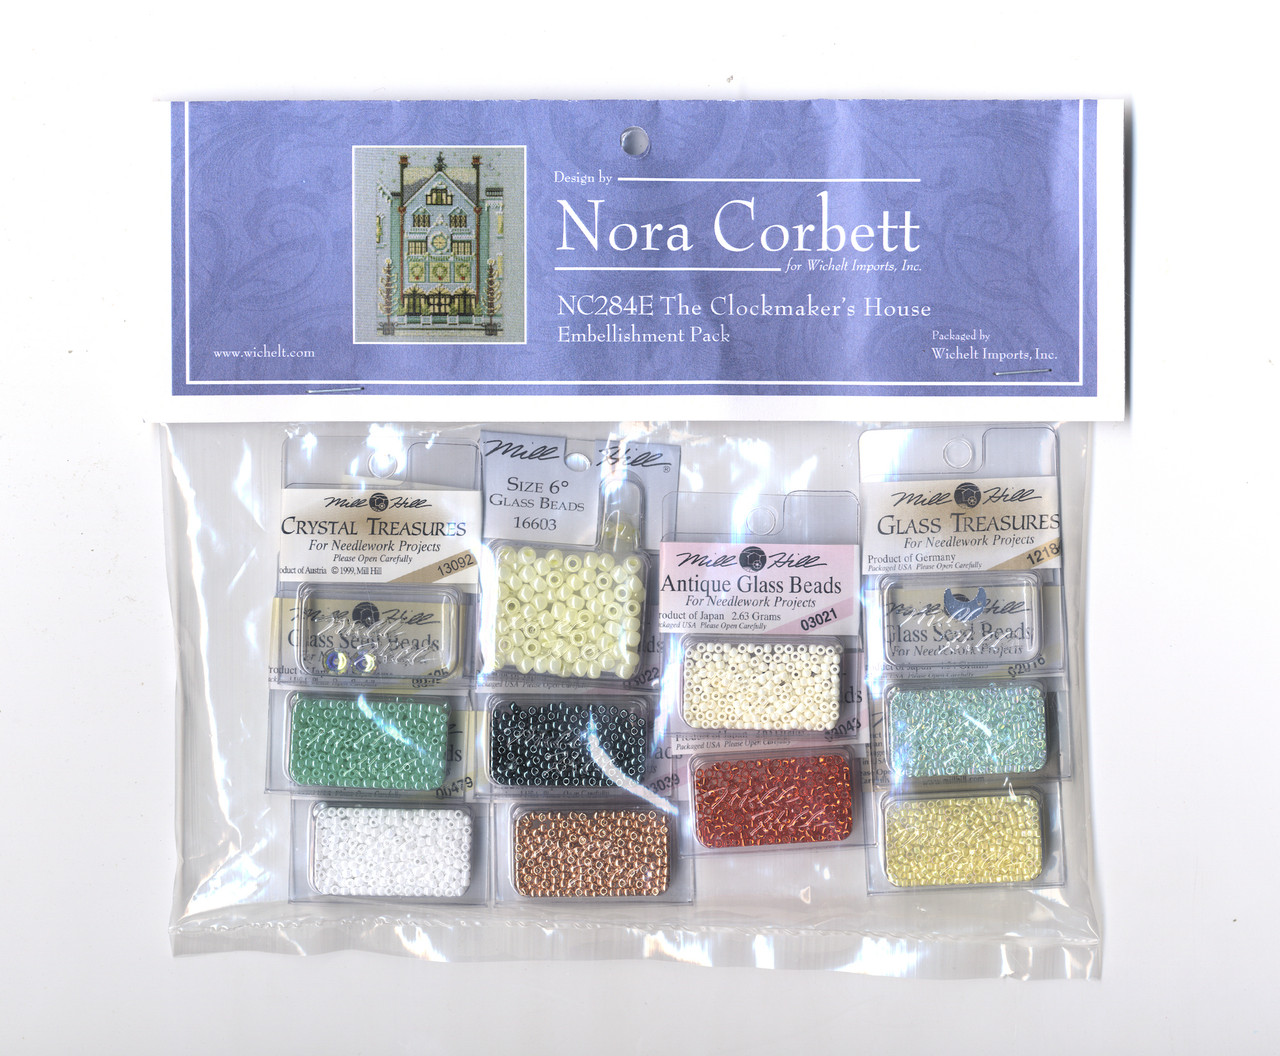 Nora Corbett Embellishment Pack  - The Clockmaker's House